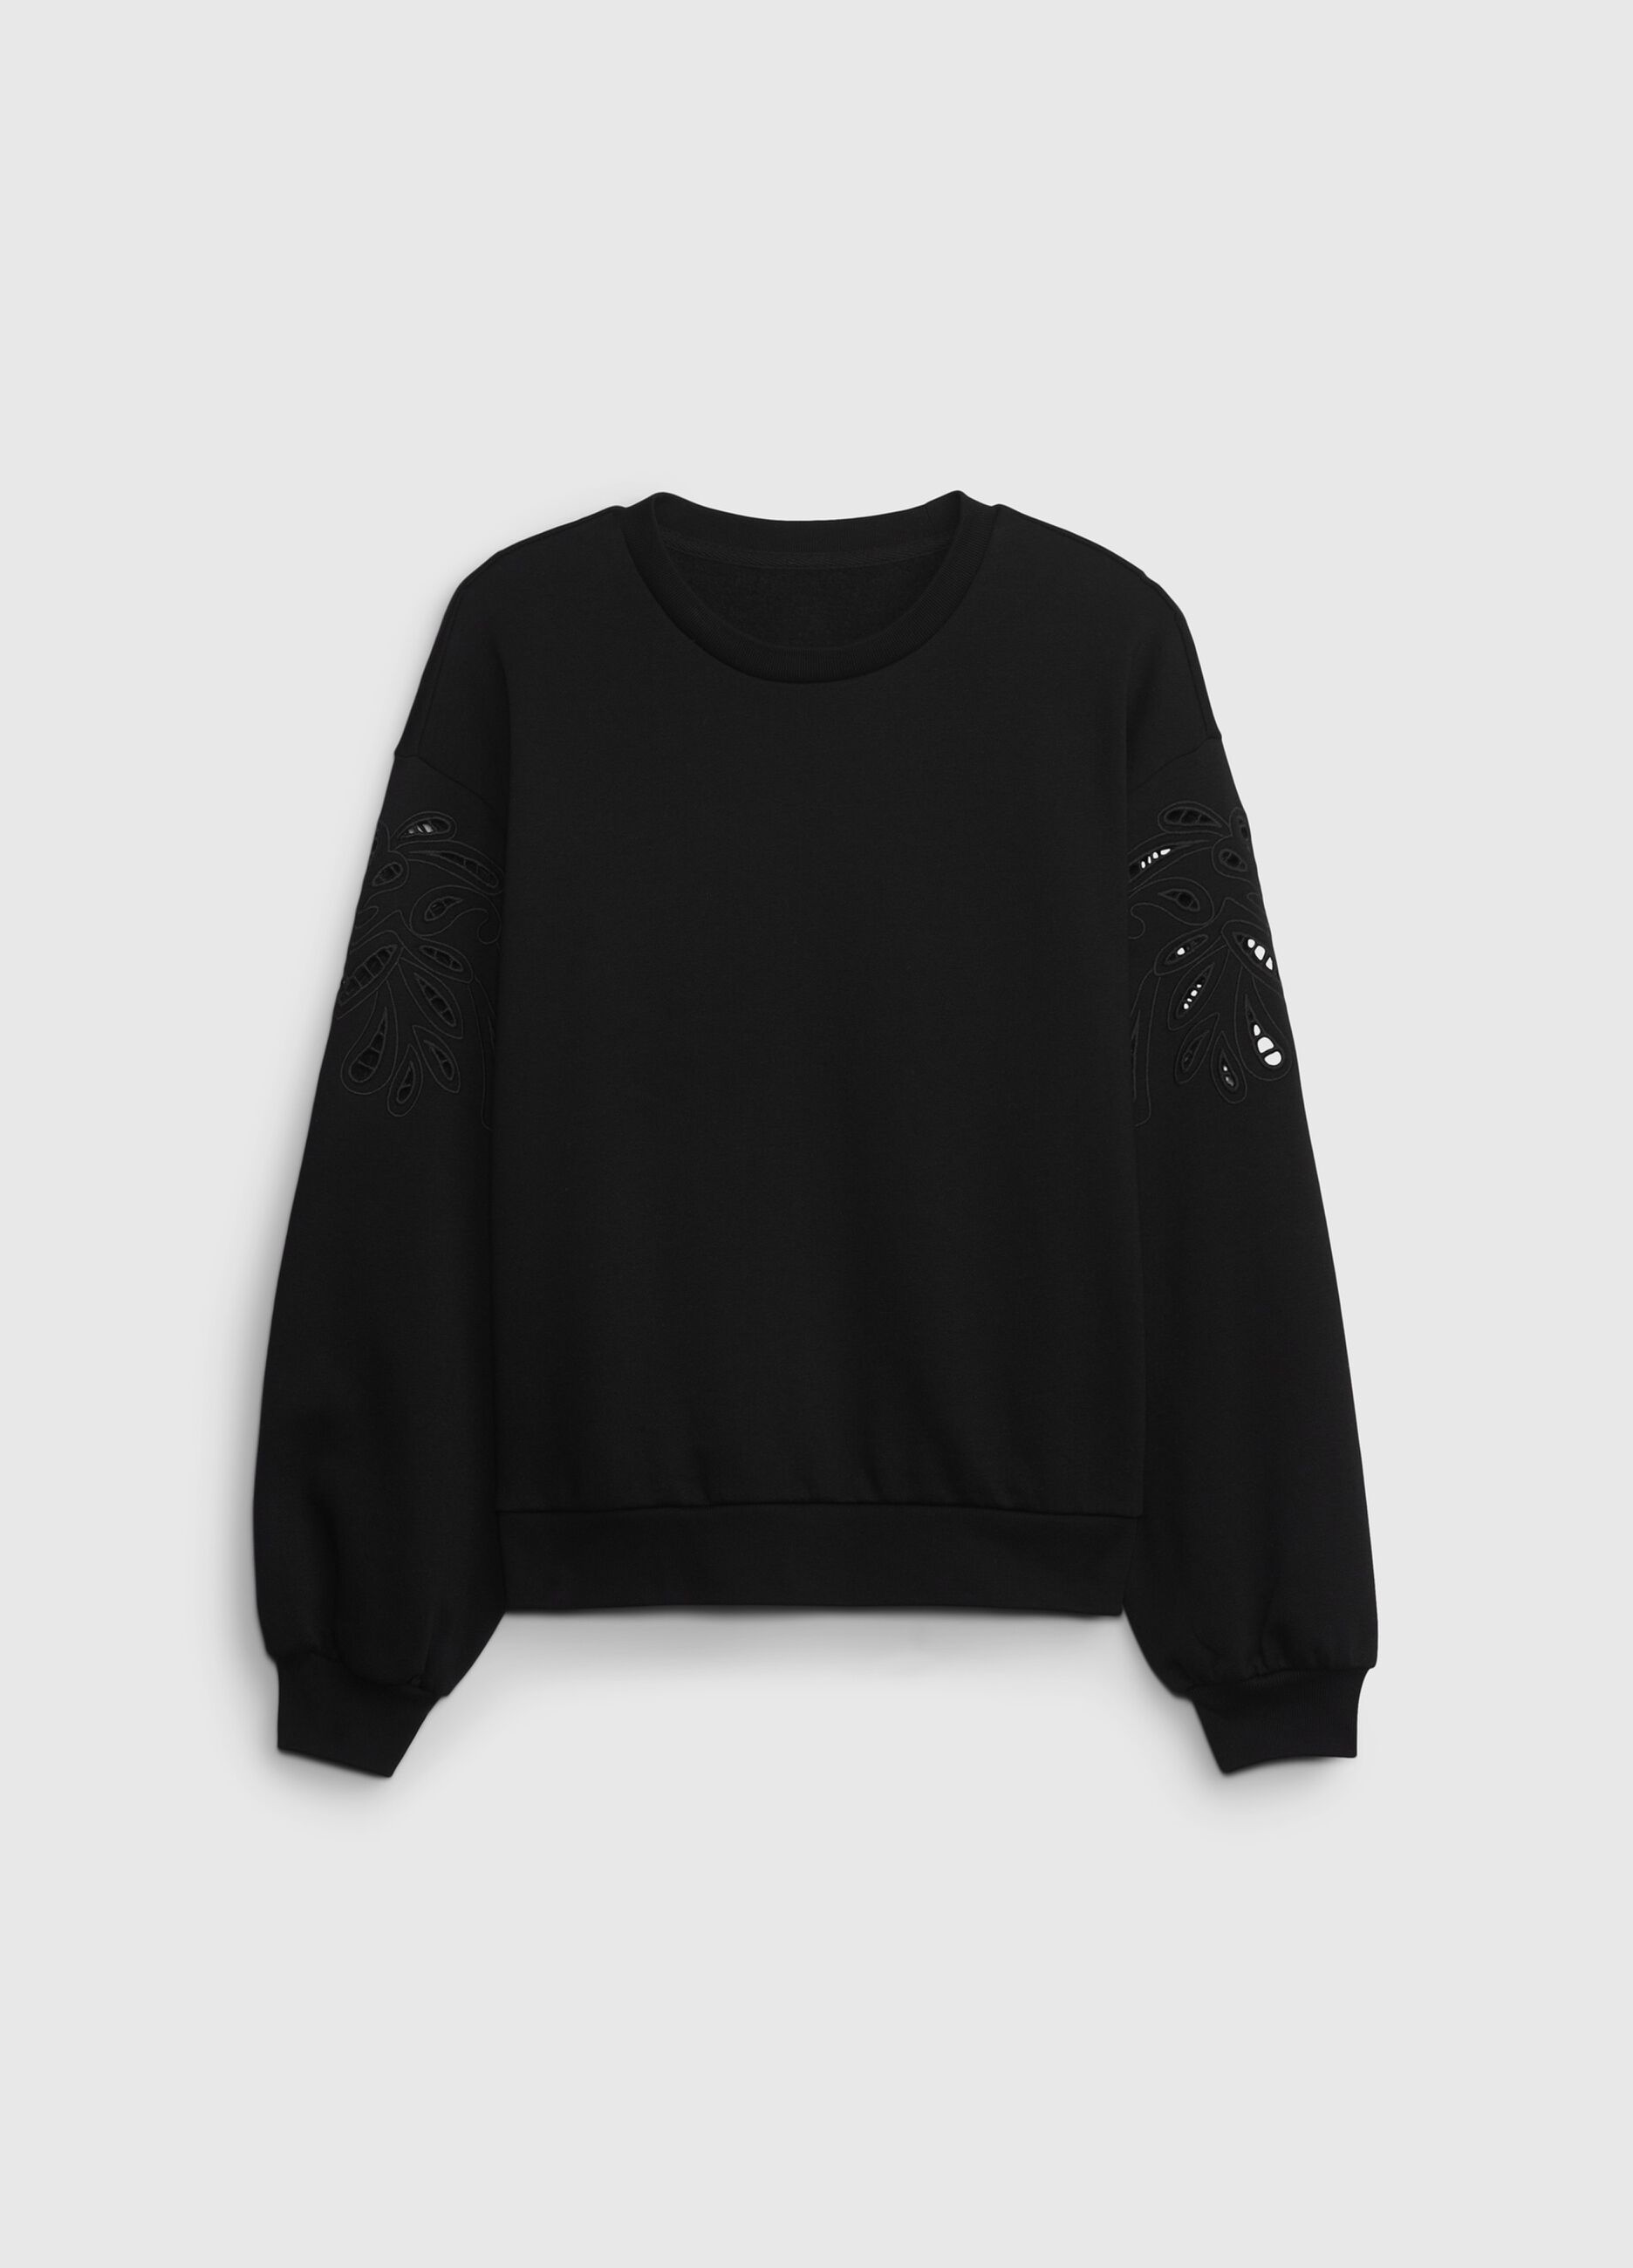 Sweatshirt with openwork details